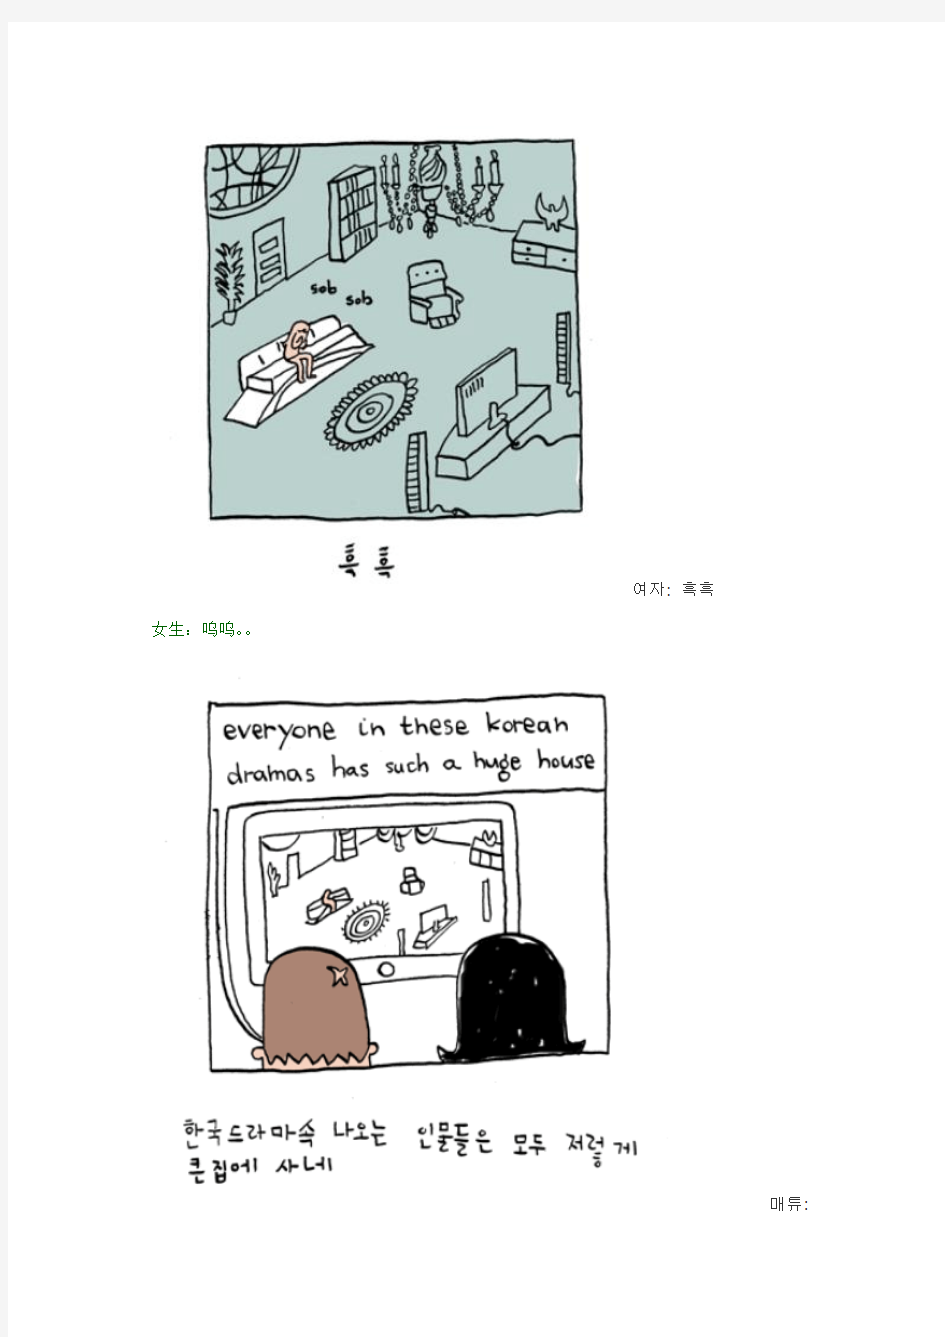 看漫画学韩语：《外国人在韩国》之“问个愚蠢的问题”